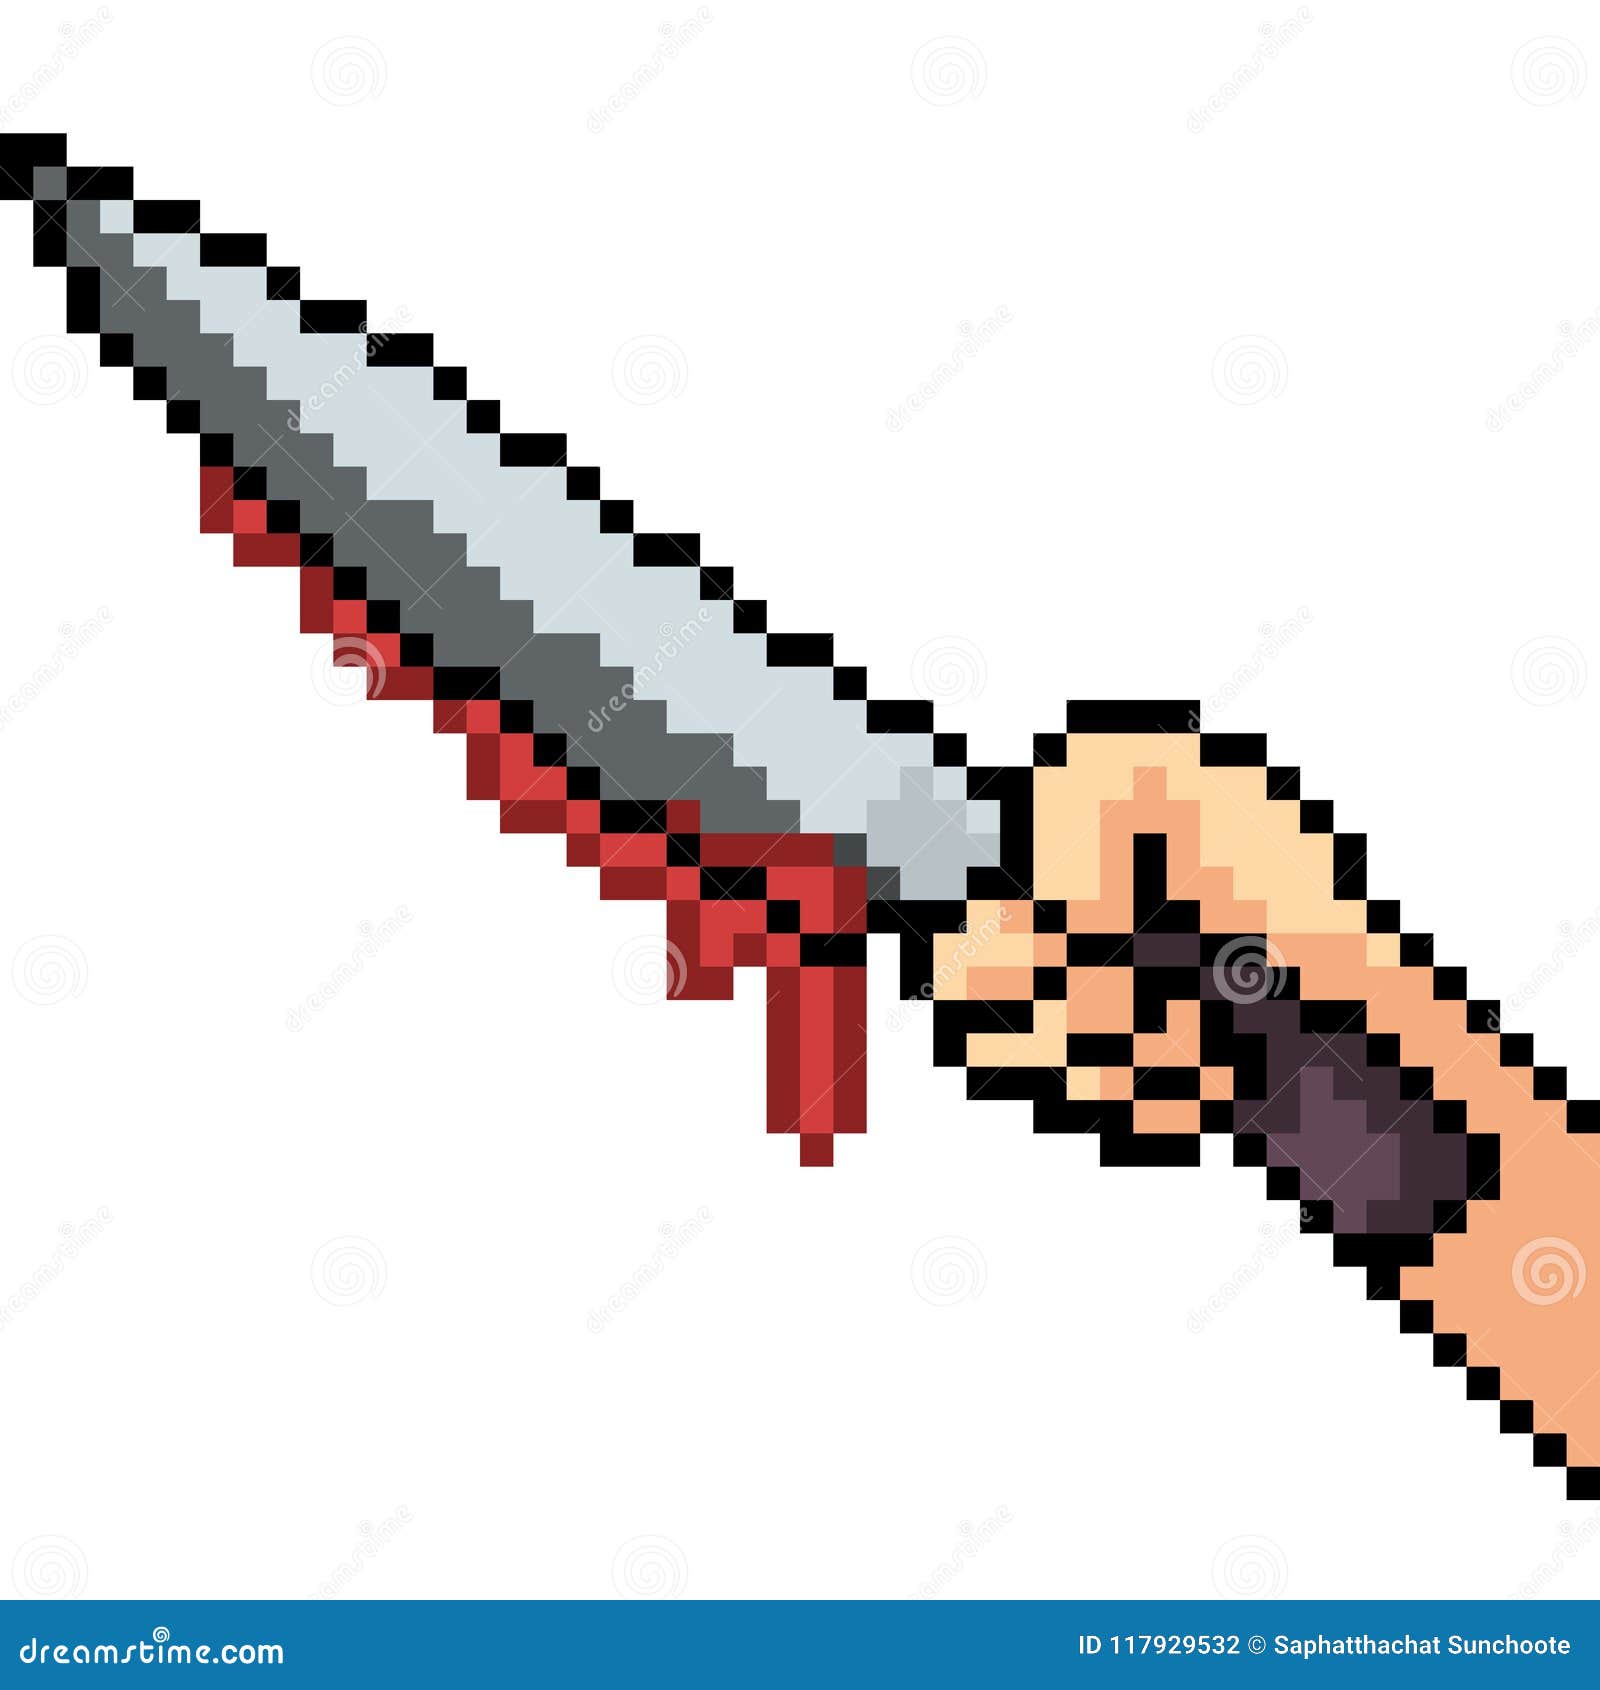 Among Us Knife Pixel Art - vrogue.co